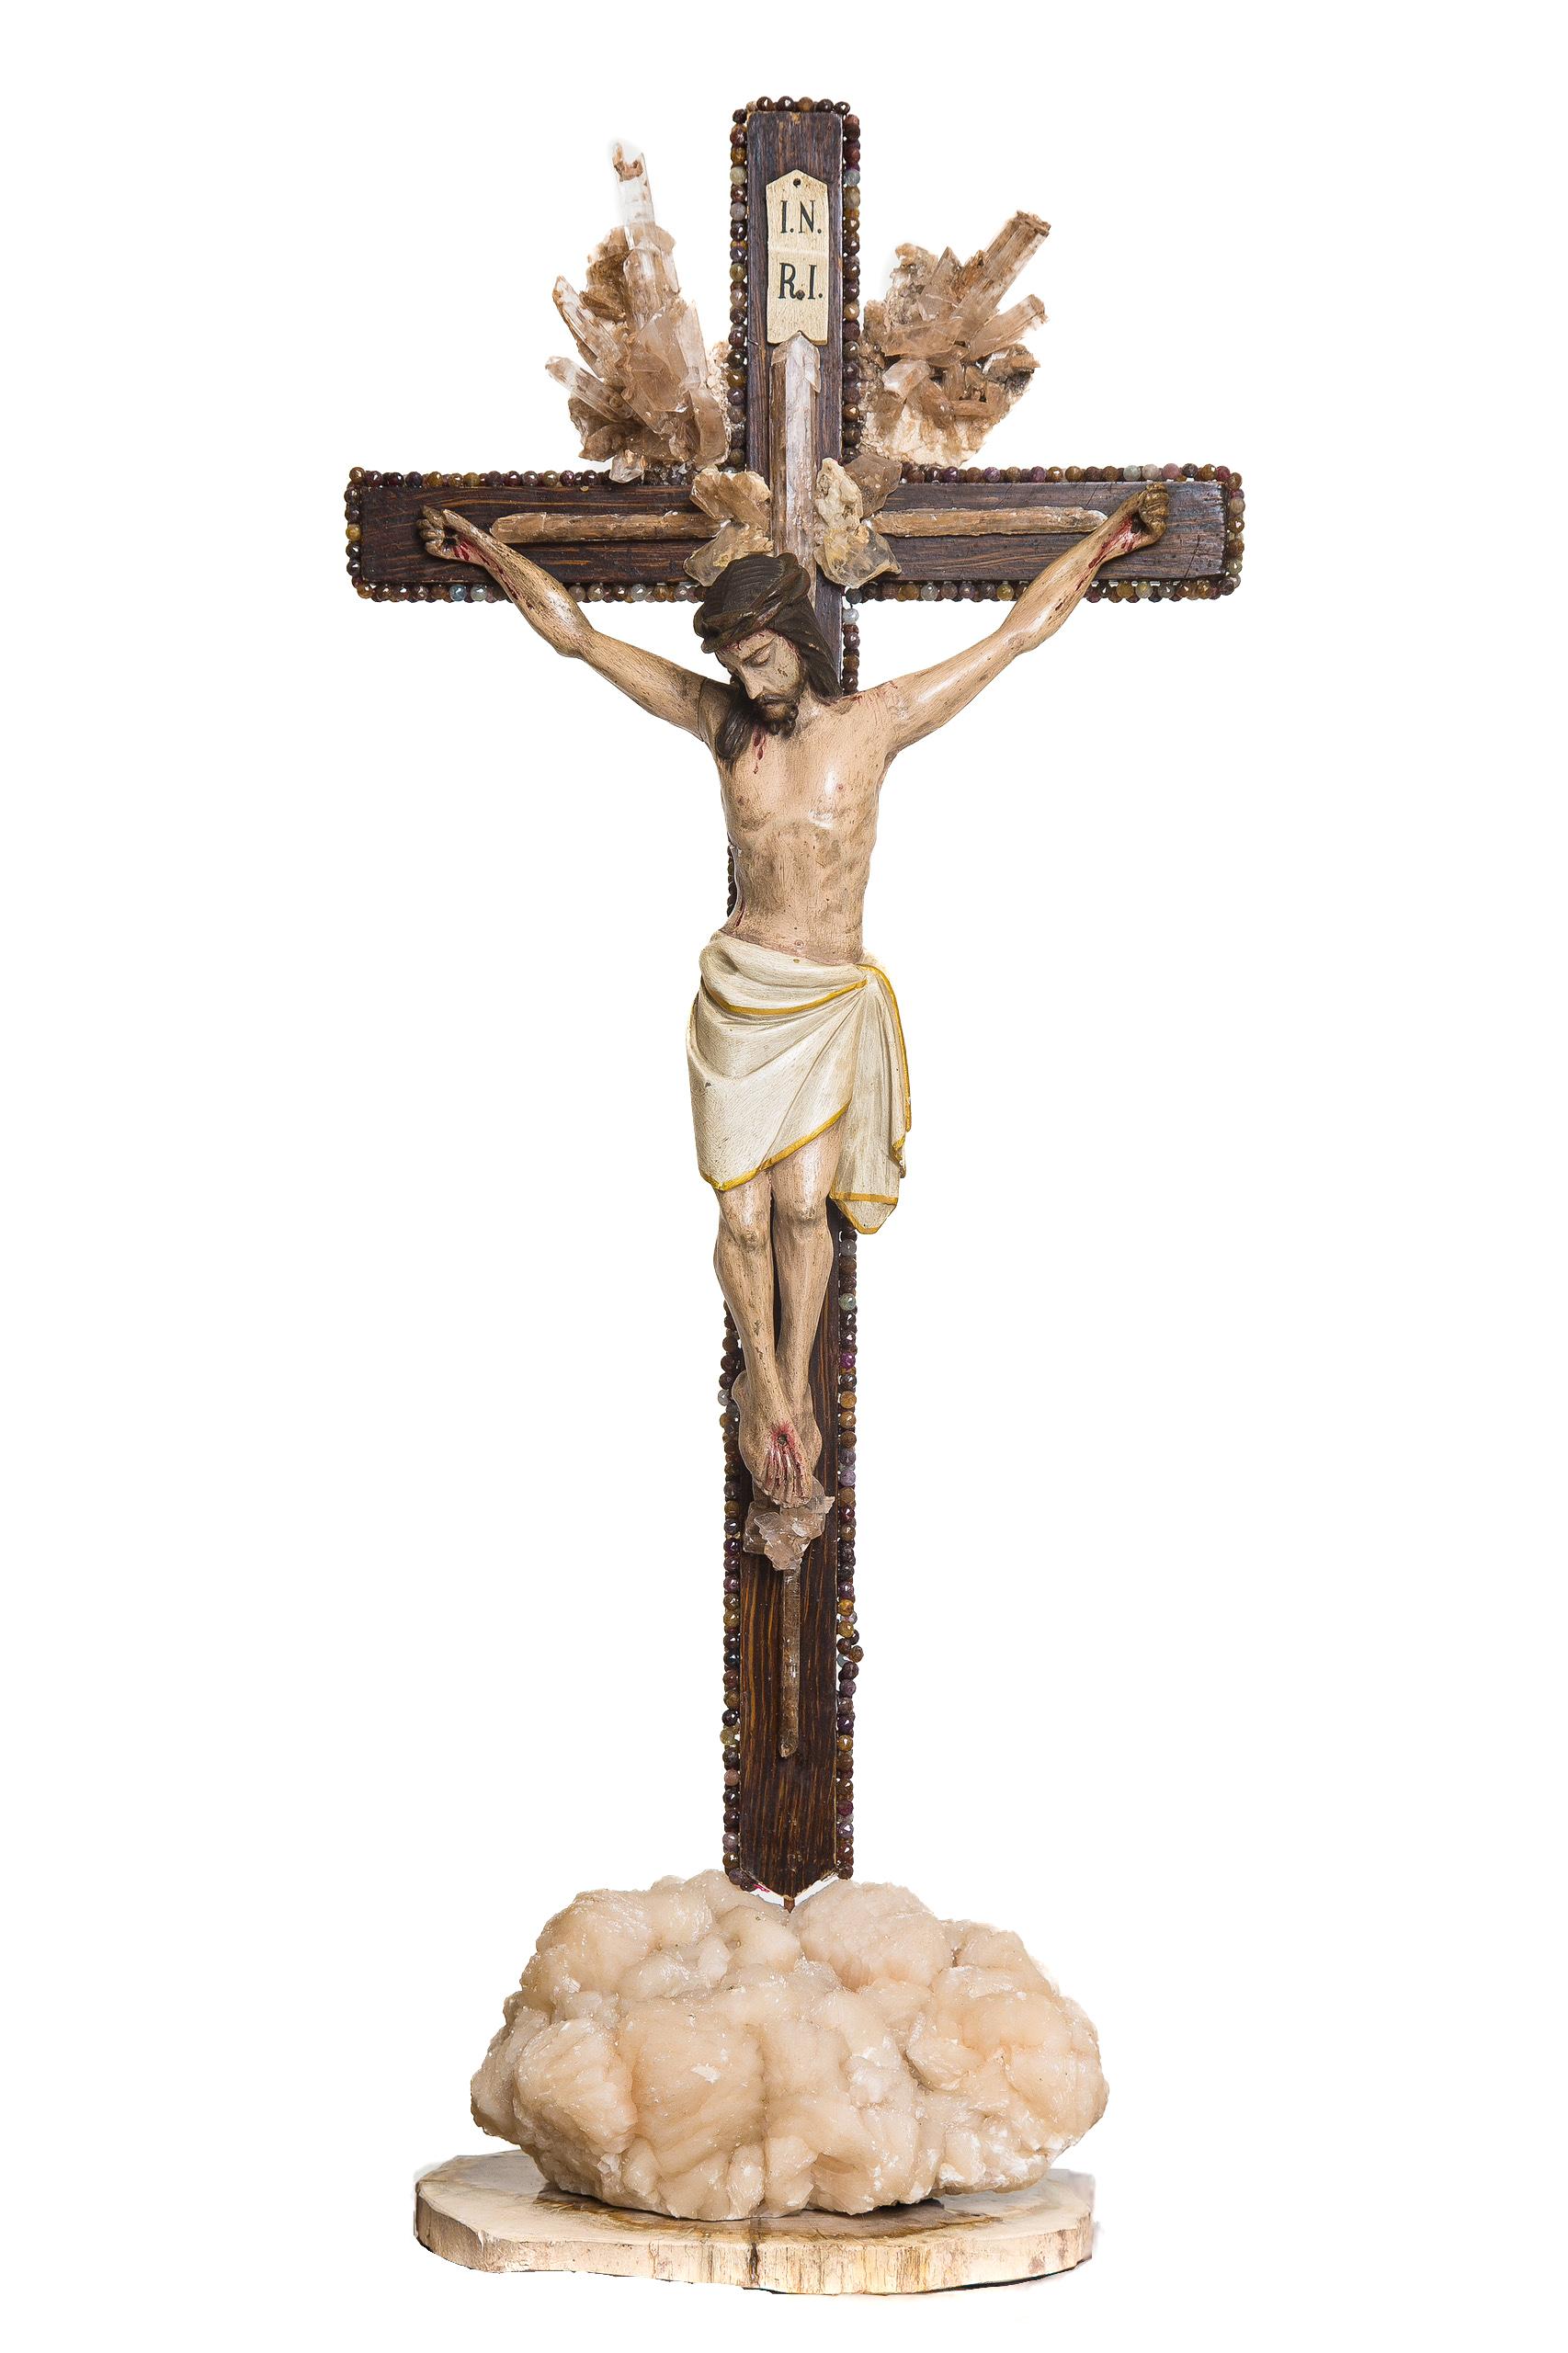 Crucifix italien sculptural du XVIIIe siècle avec de la sélénite en matrice et orné de perles de pierres précieuses autour de la croix. La sélénite en matrice crée les rayons de soleil autour du crucifix. La pièce est montée sur de l'apophyllite et